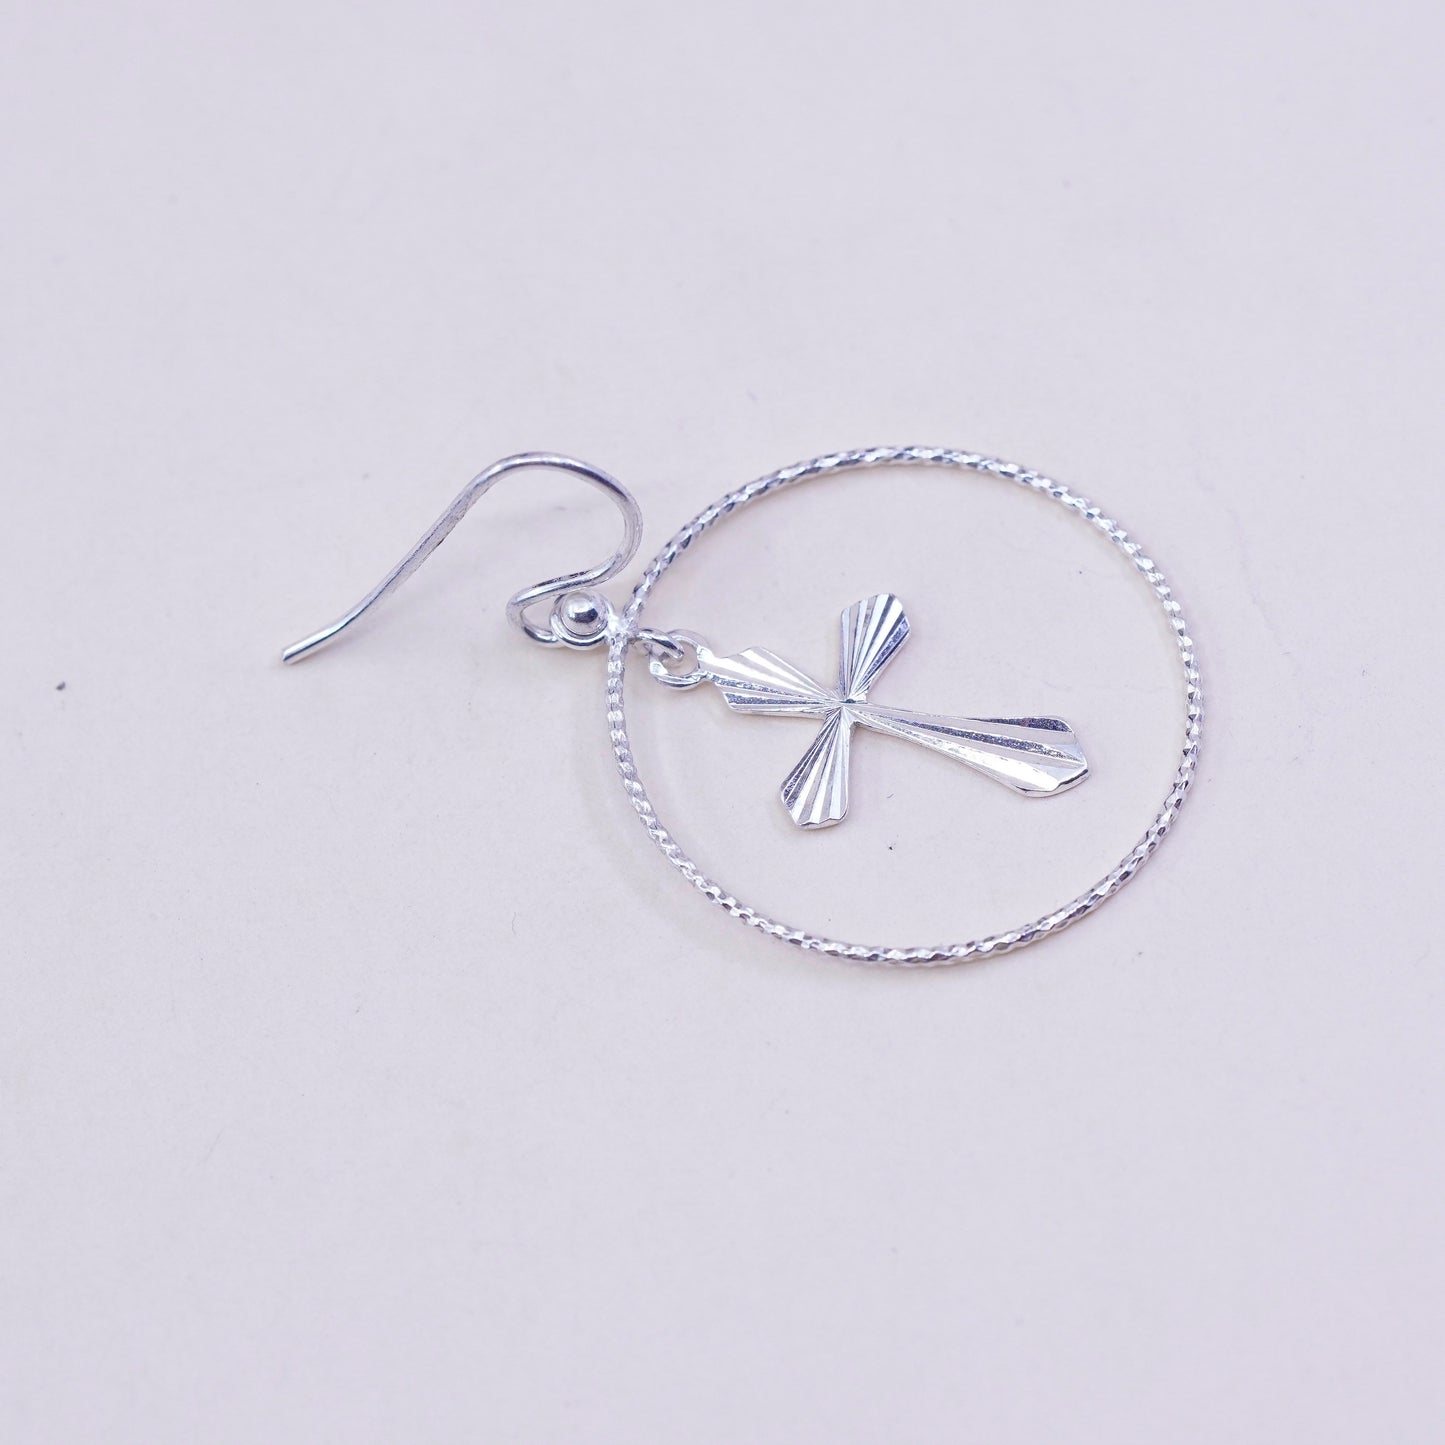 Vintage Sterling silver handmade earrings, 925 hoops with cross charms, cute, stamped 925